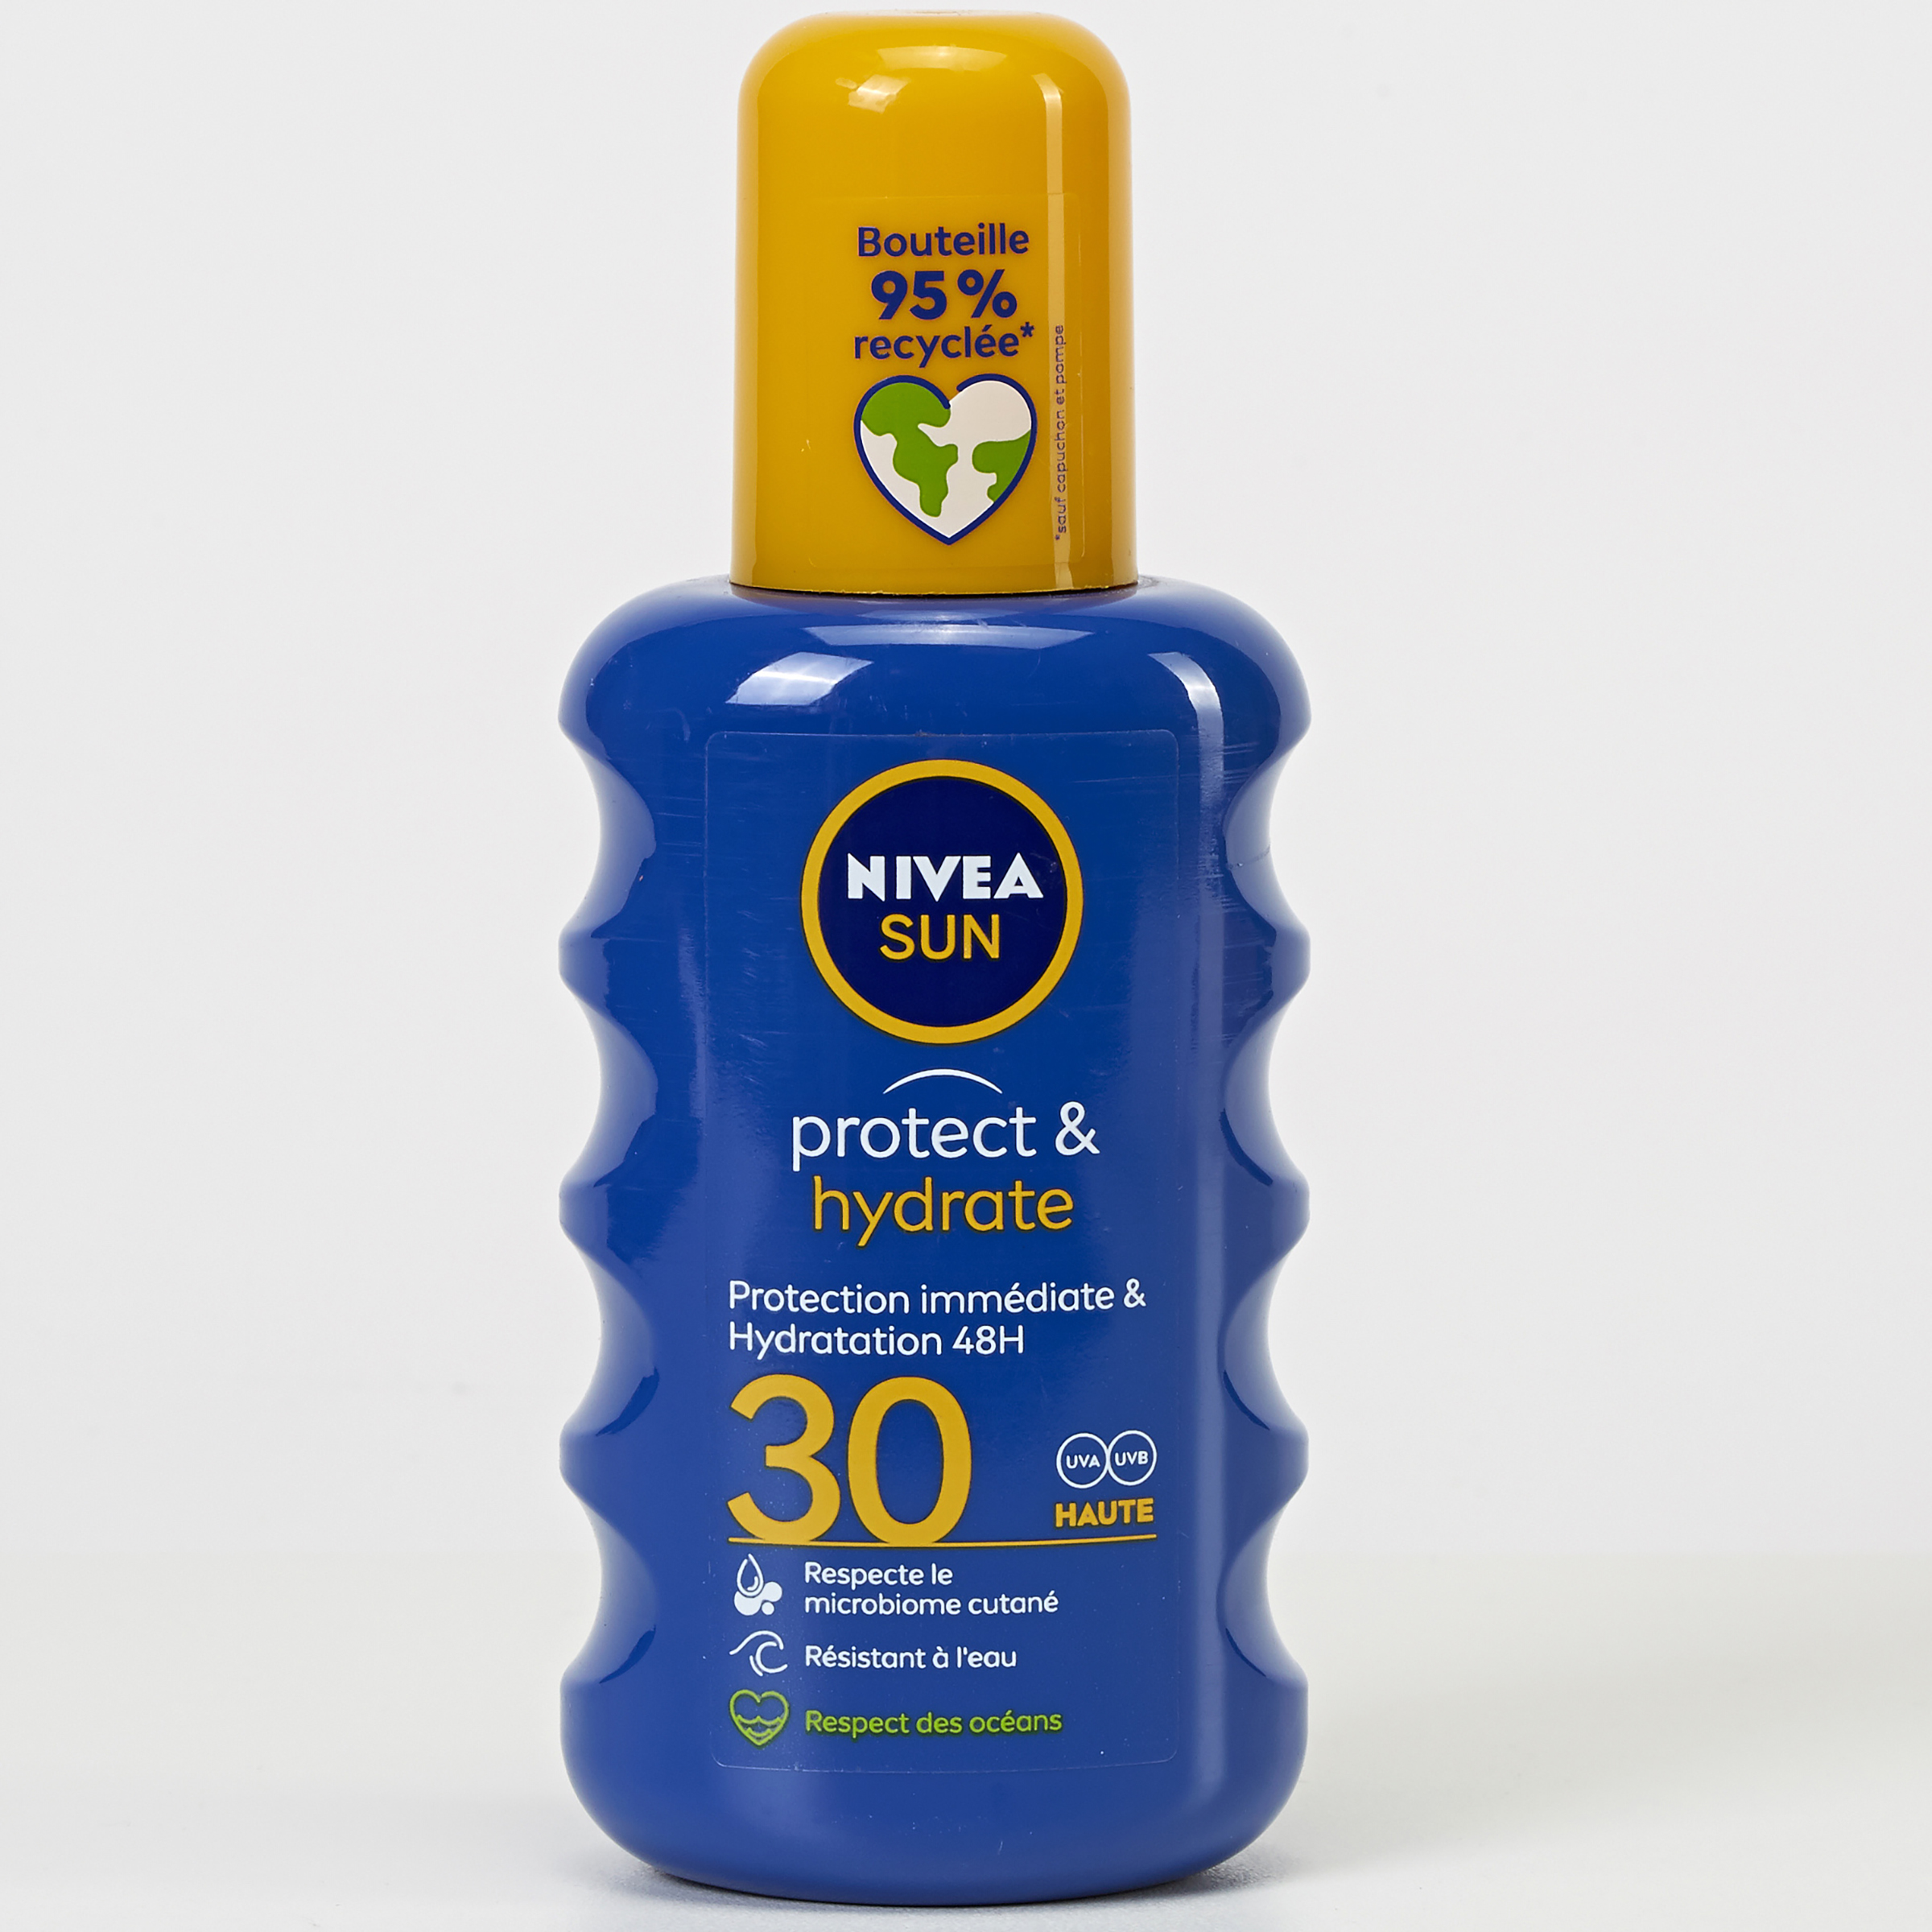 Nivea sun Protect & hydrate - 